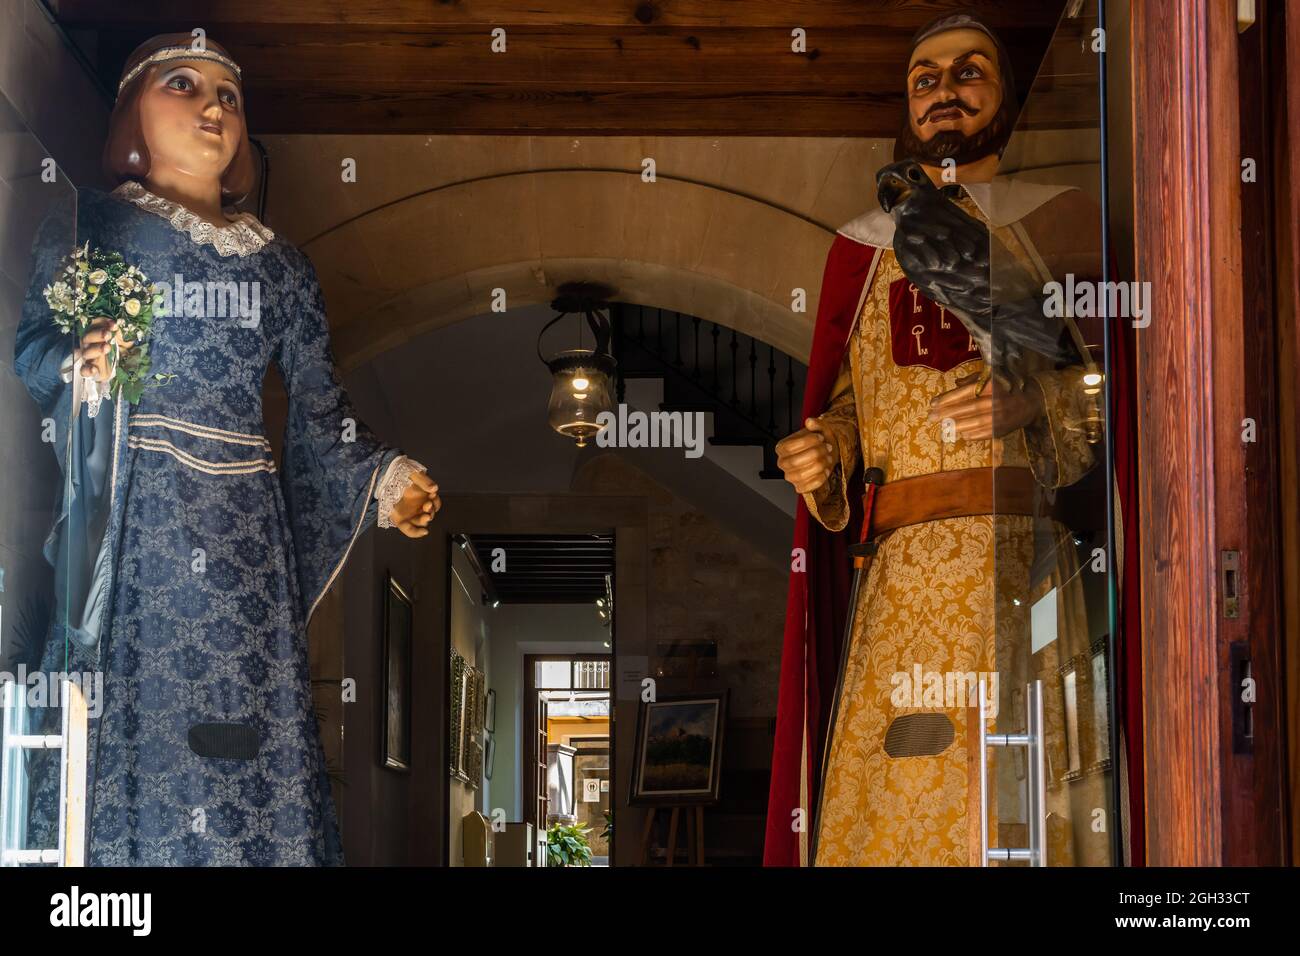 Santanyi, Spanien; september 04 2021: Skulpturen von Giganten, die typisch für die mallorquinische Populärkultur sind, am Eingang des Rathauses der Stadt Santanyi Stockfoto